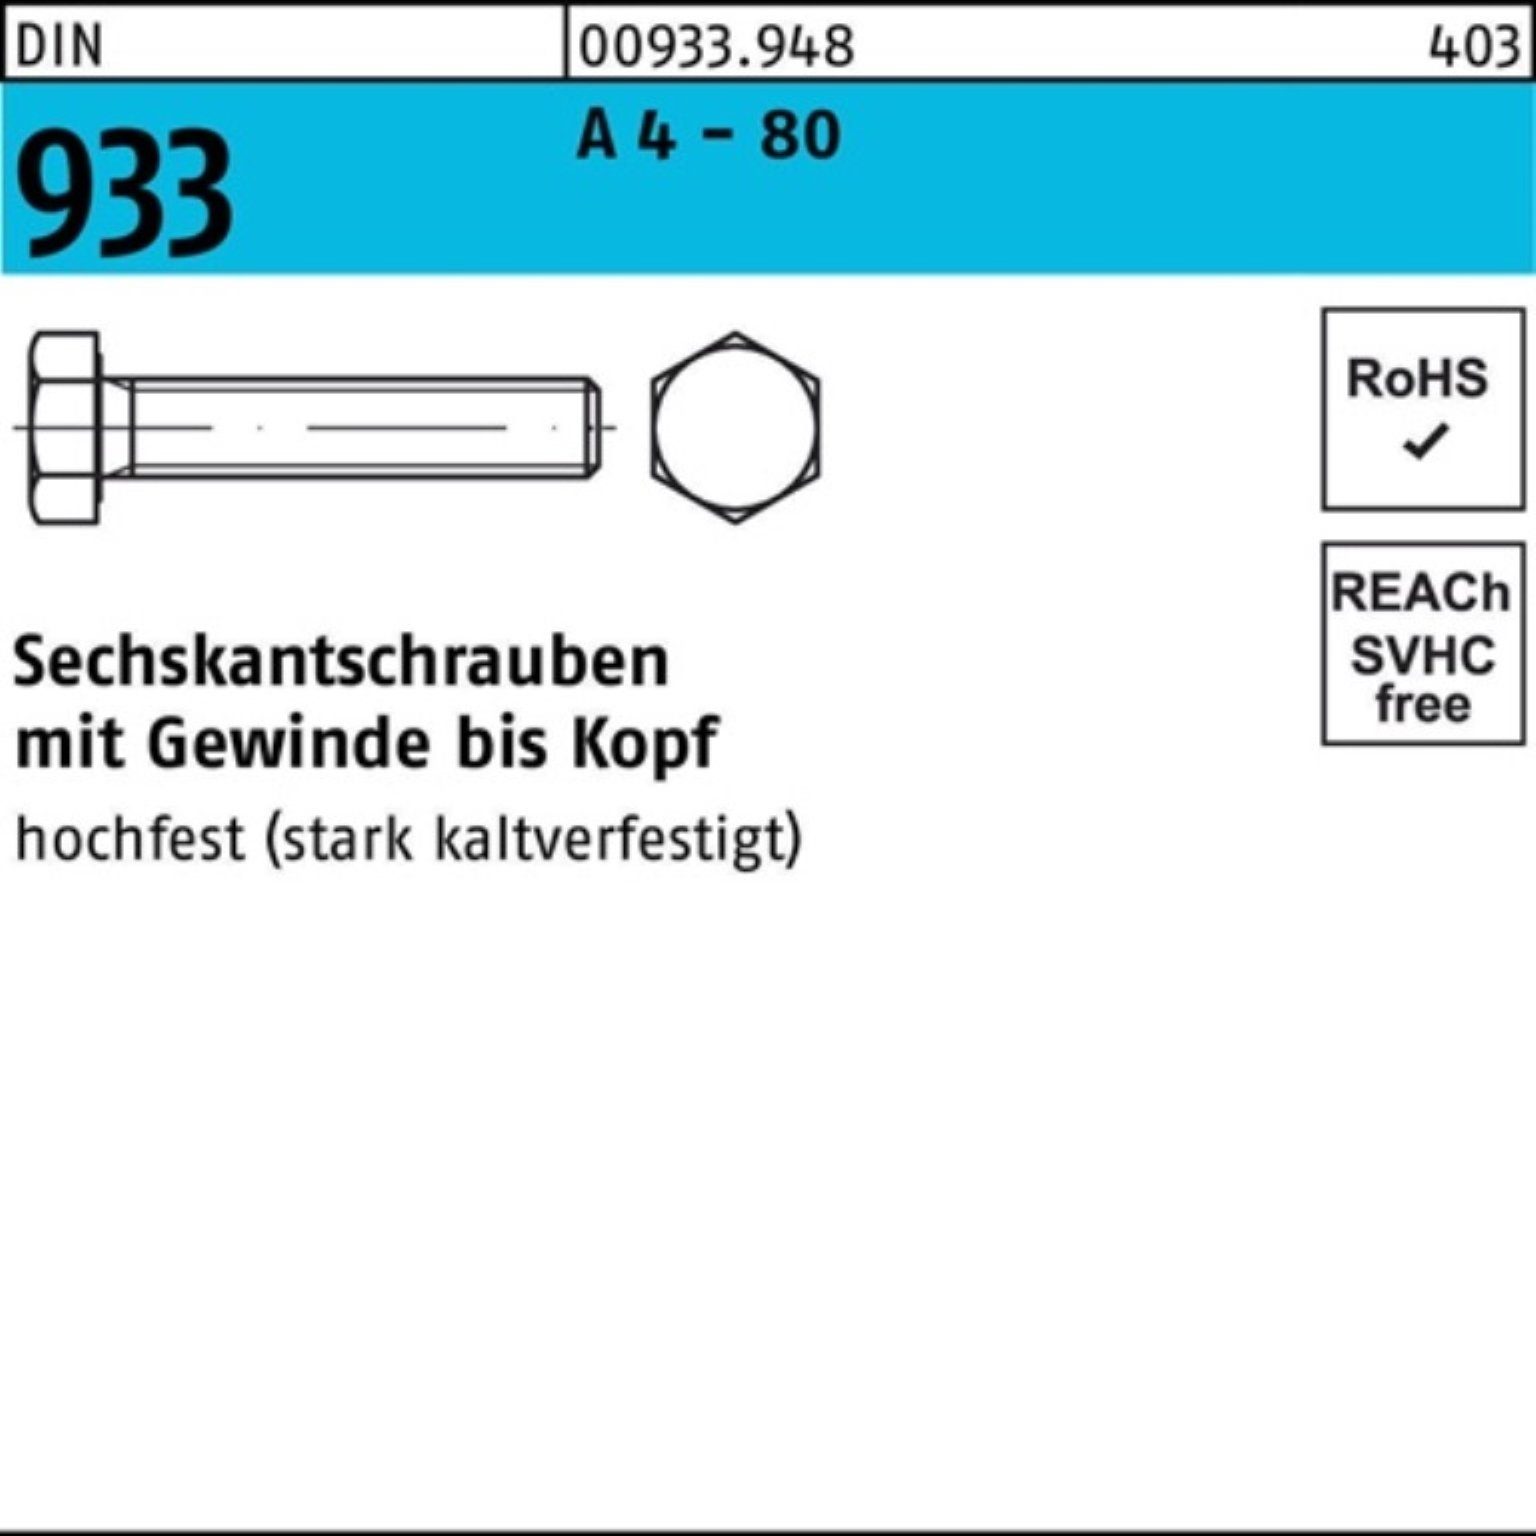 Reyher Sechskantschraube 100er Pack Sechskantschraube DIN 933 VG M8x 55 A 4 - 80 100 Stück DIN